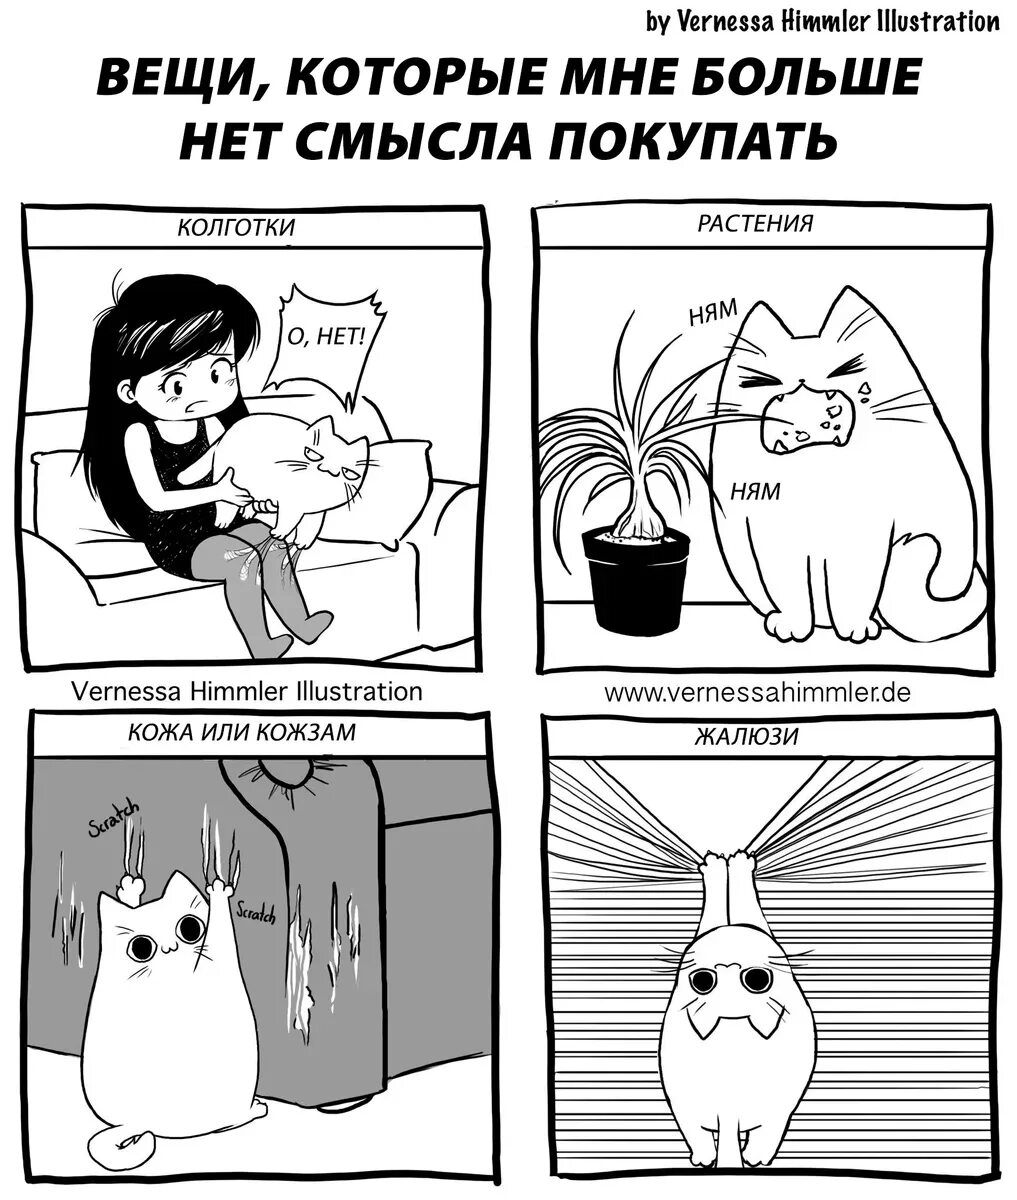 Комикс. Комиксы с котиками. Комиксы о котах. Смешной комикс про кота.